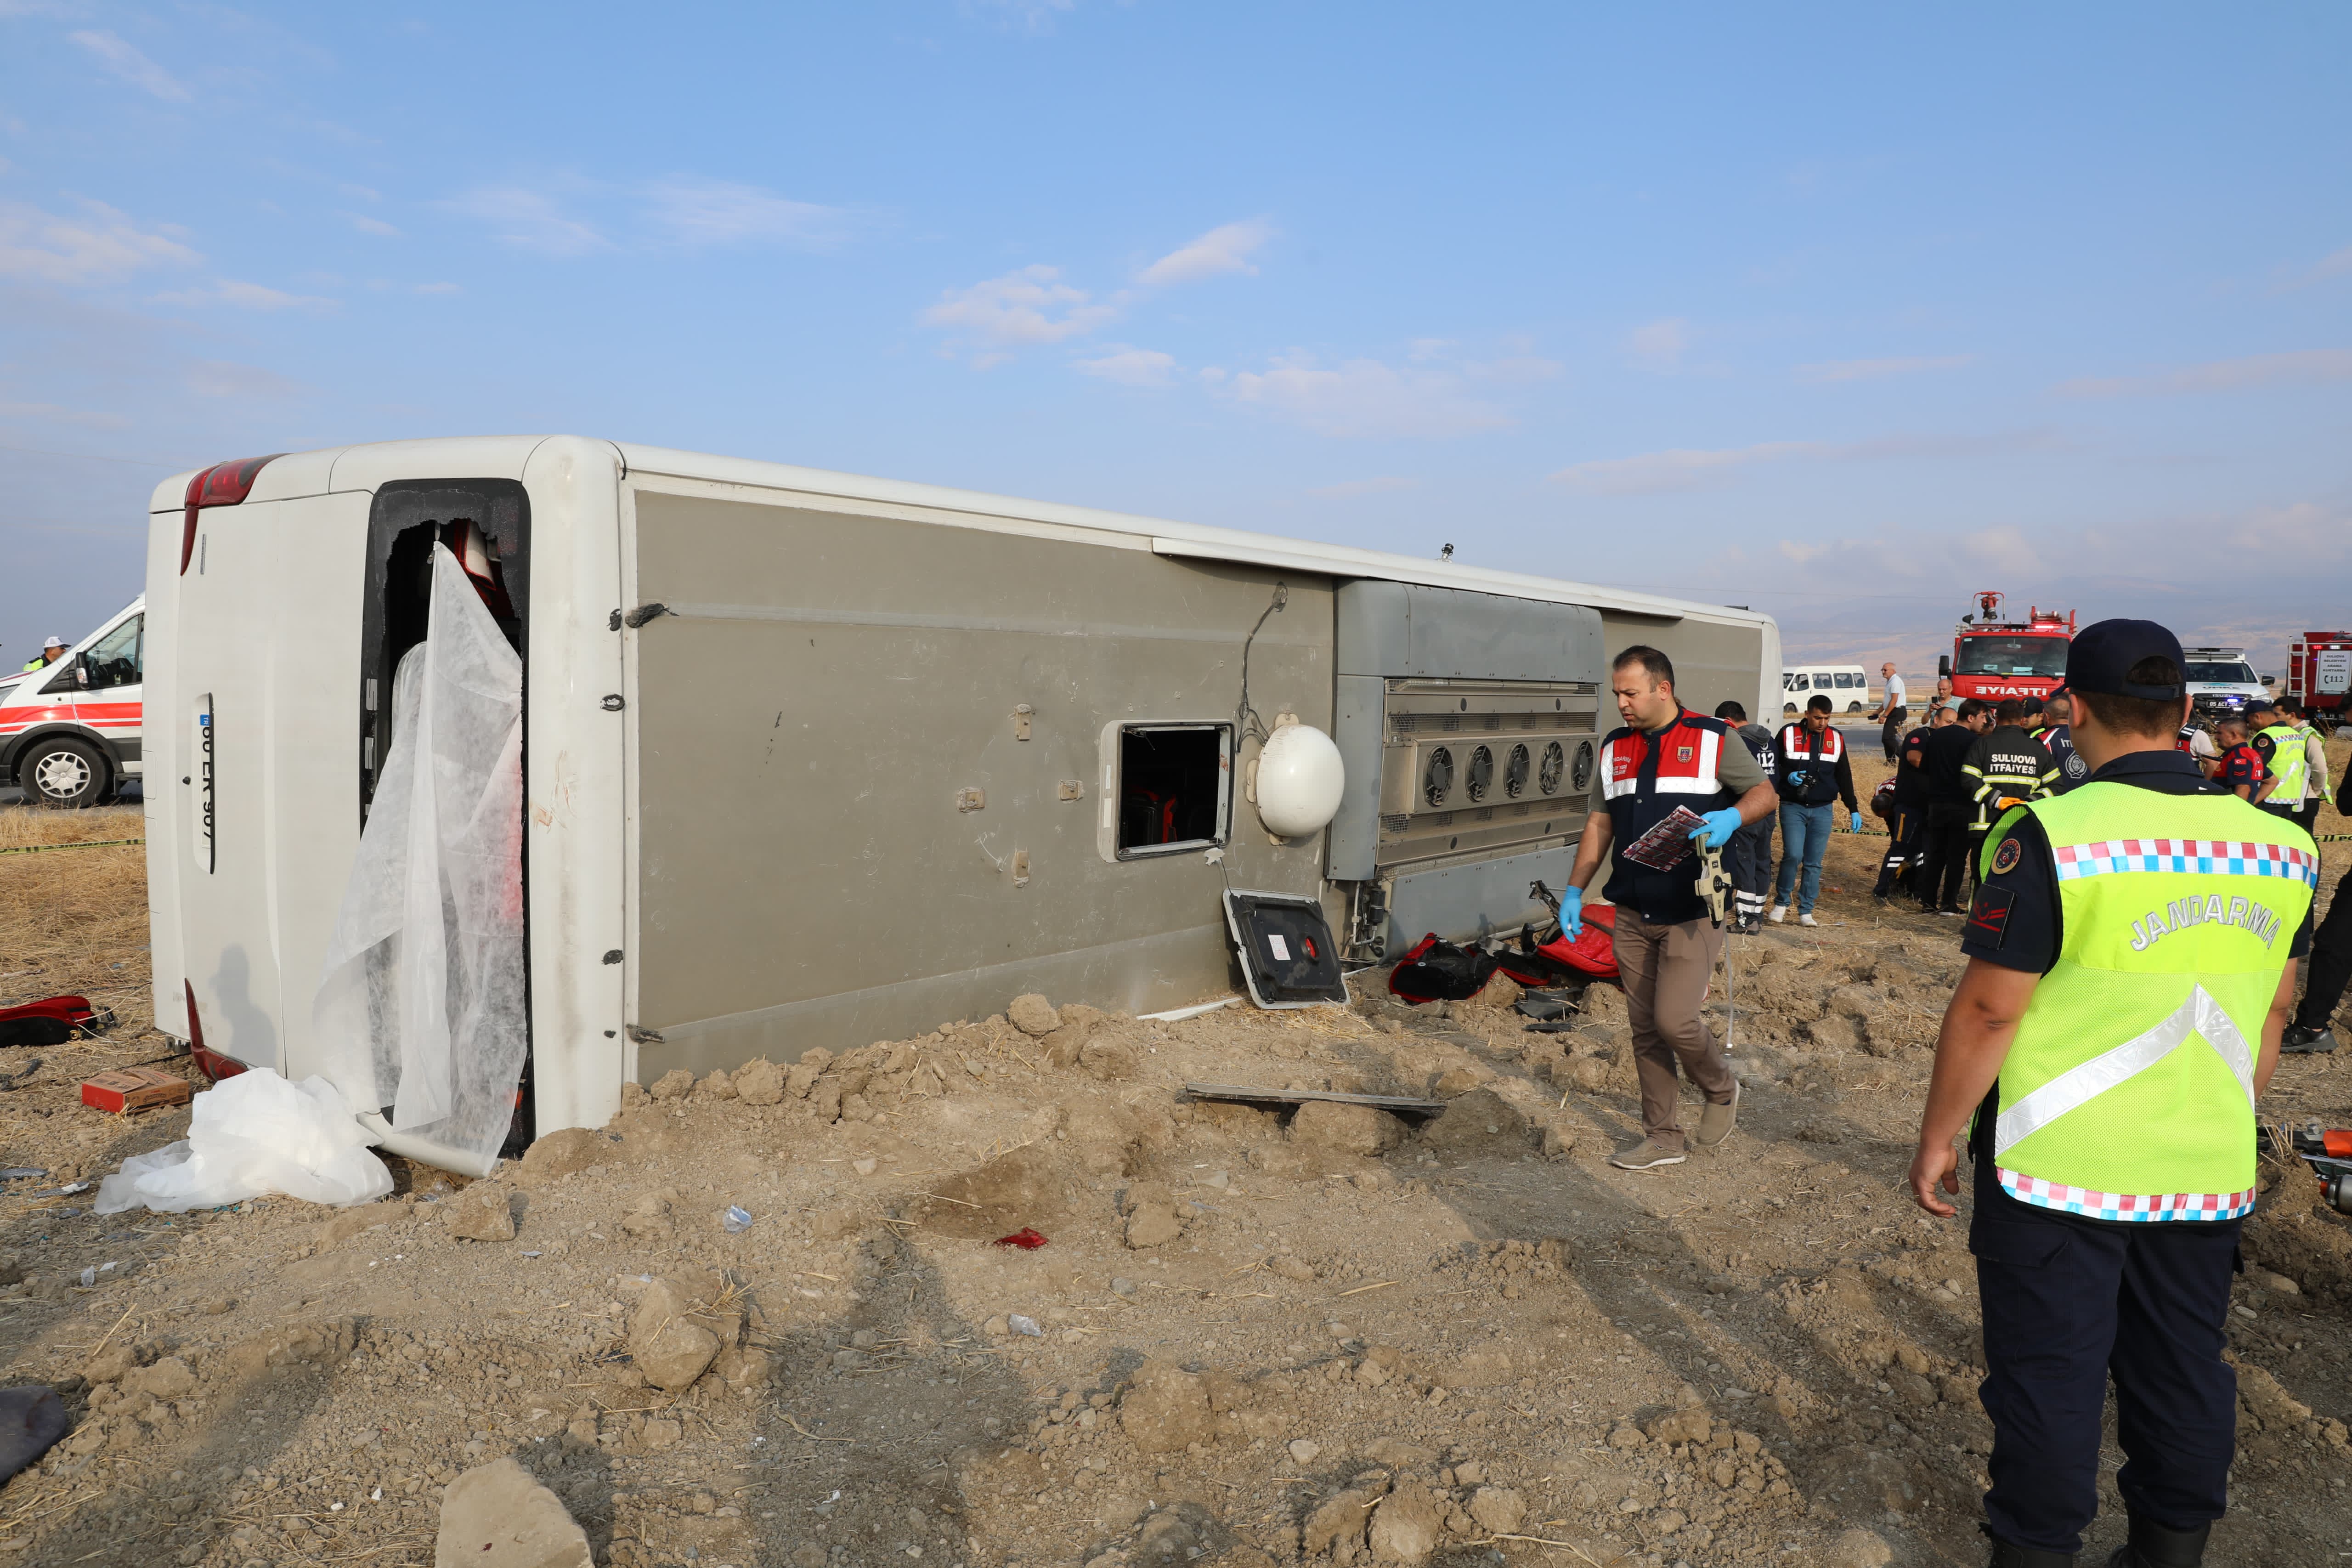 Amasya’nın Merzifon ilçesinde yolcu otobüsünün devrilmesi sonucu ölü ve yaralılar olduğu bildirildi.